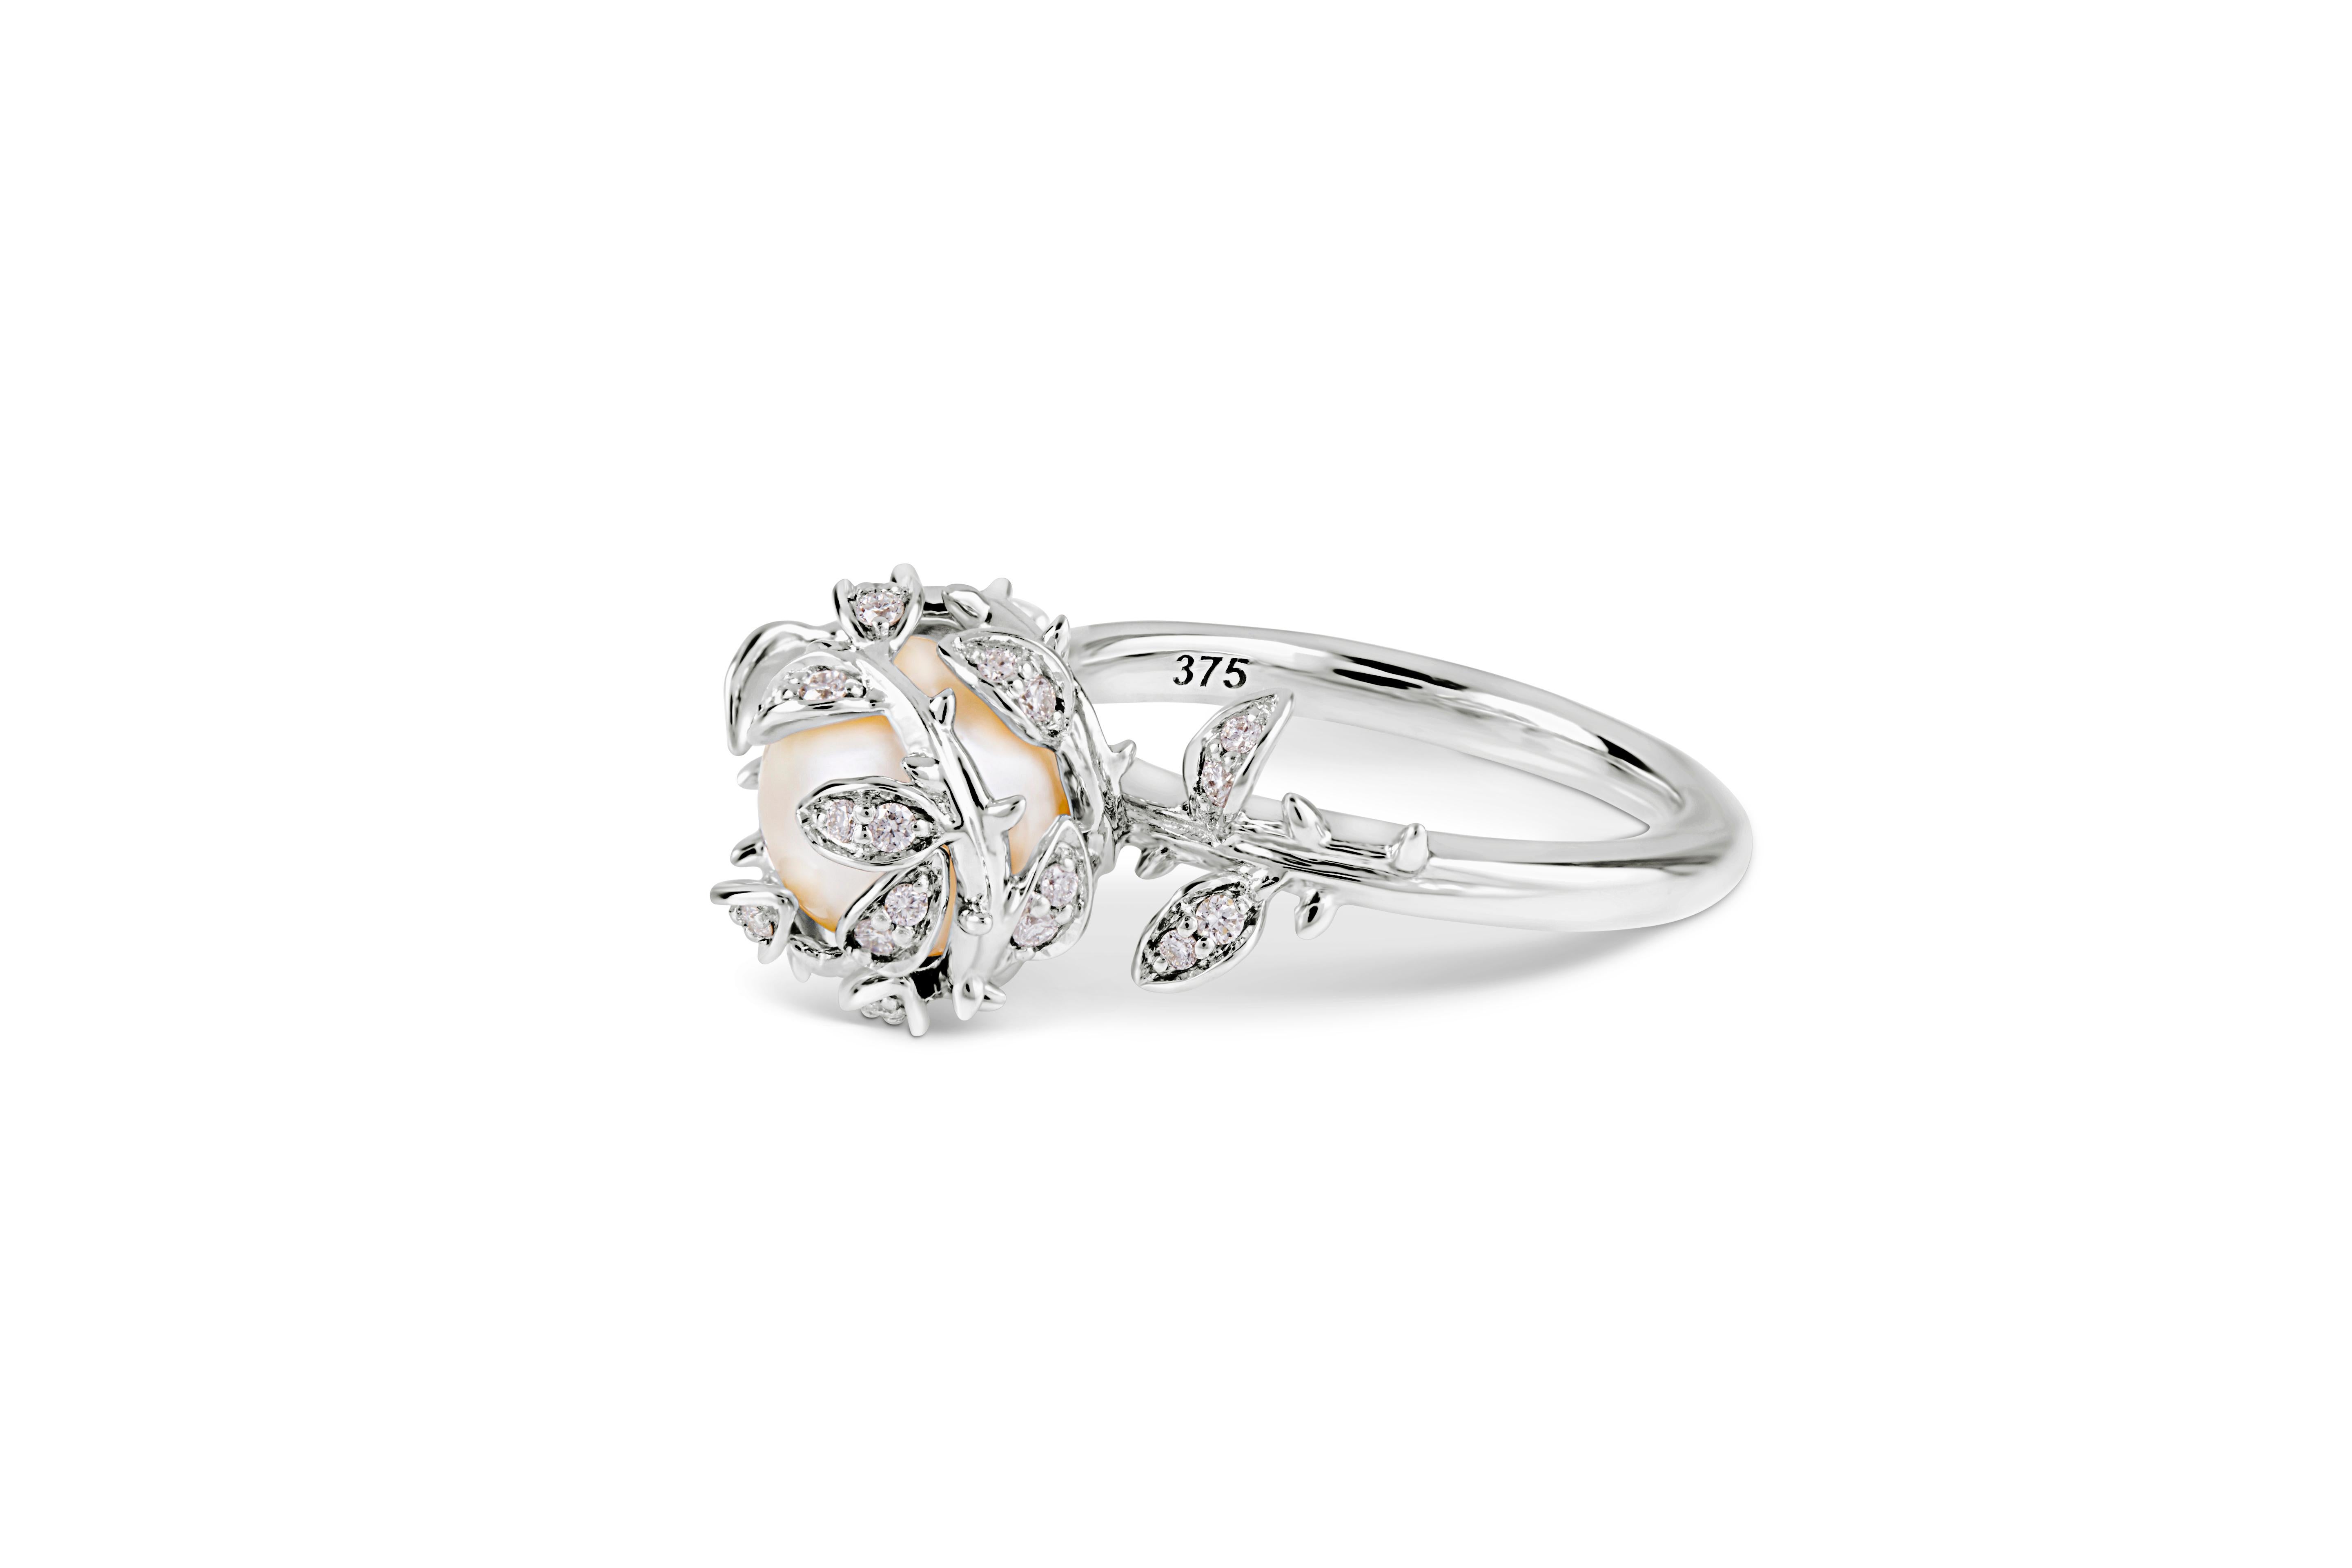 Cette bague habillée très détaillée présente une perle d'eau douce nichée parmi des feuilles de diamant et montée sur un anneau en or blanc 9ct. Notre bague à perles imbriquées représente les 